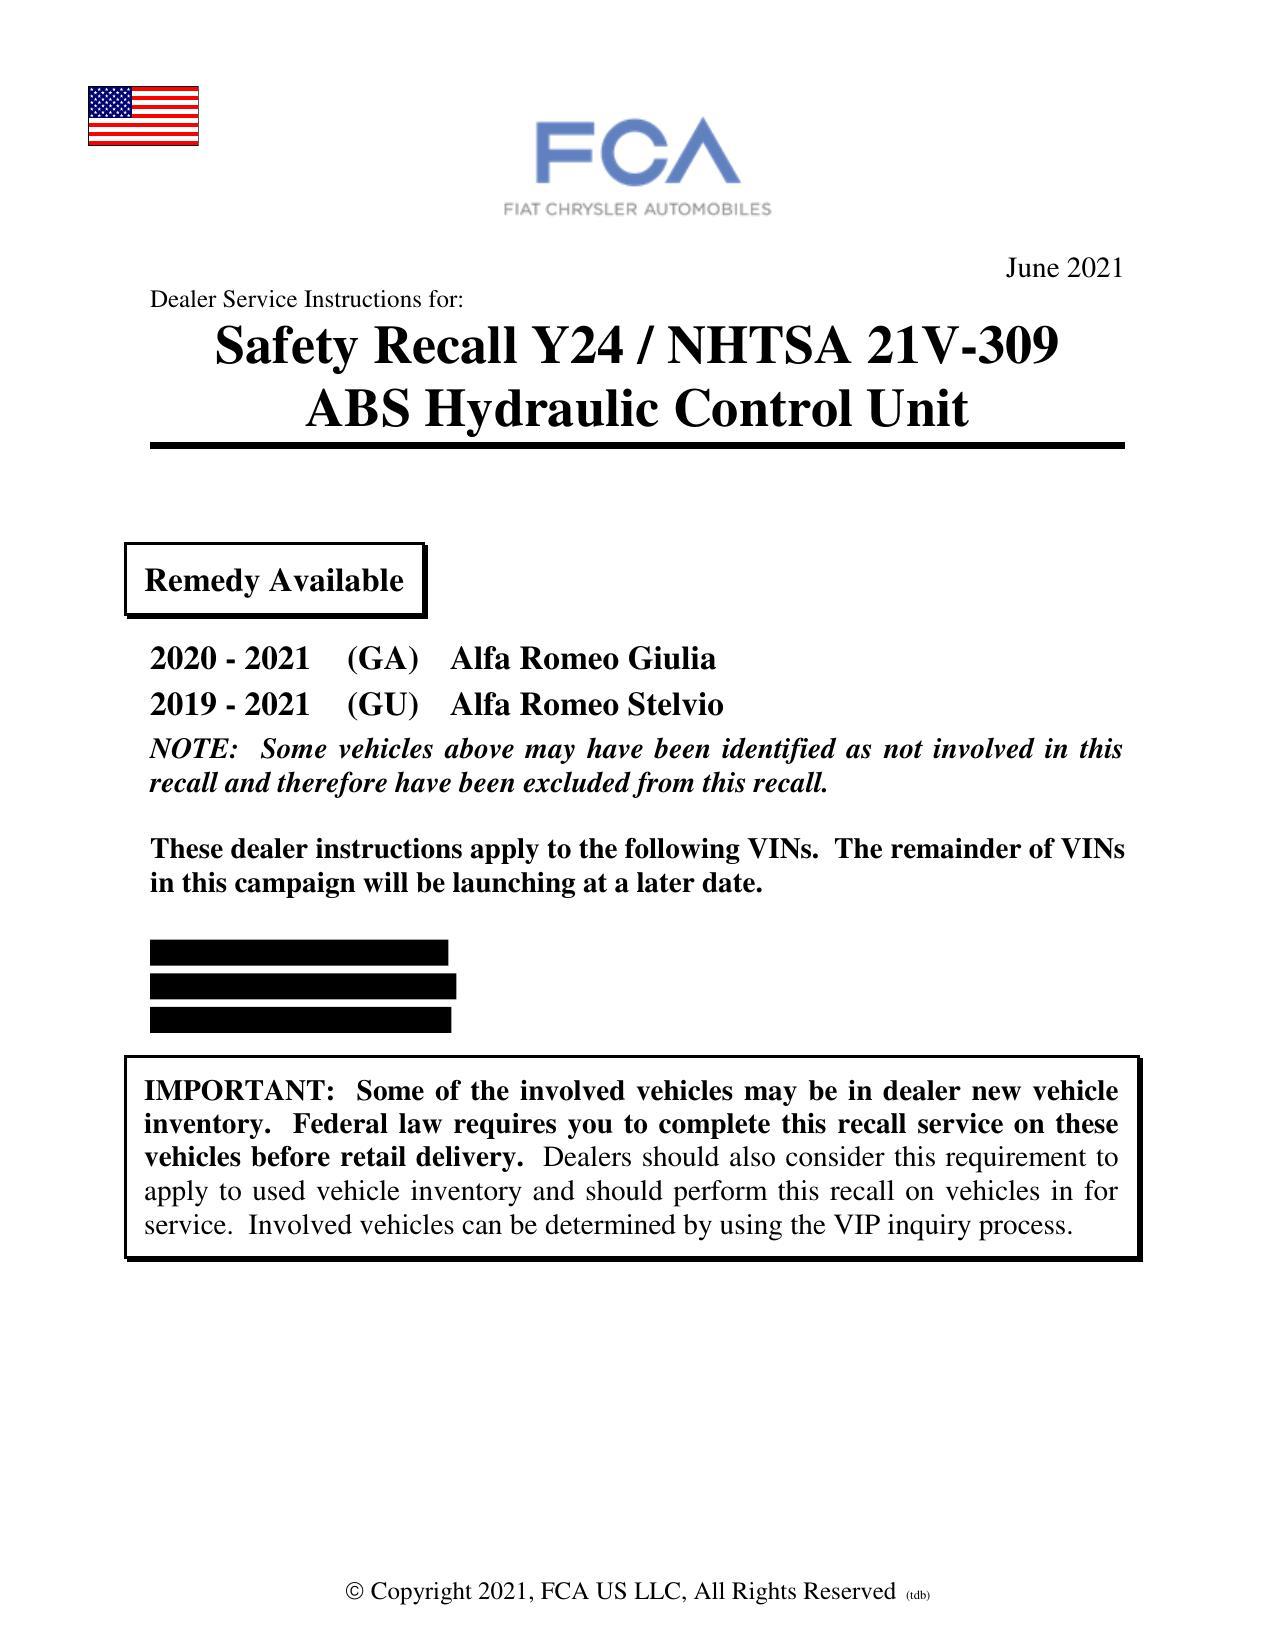 2020-2021-alfa-romeo-giulia-and-stelvio-safety-recall-y24-abs-hydraulic-control-unit.pdf